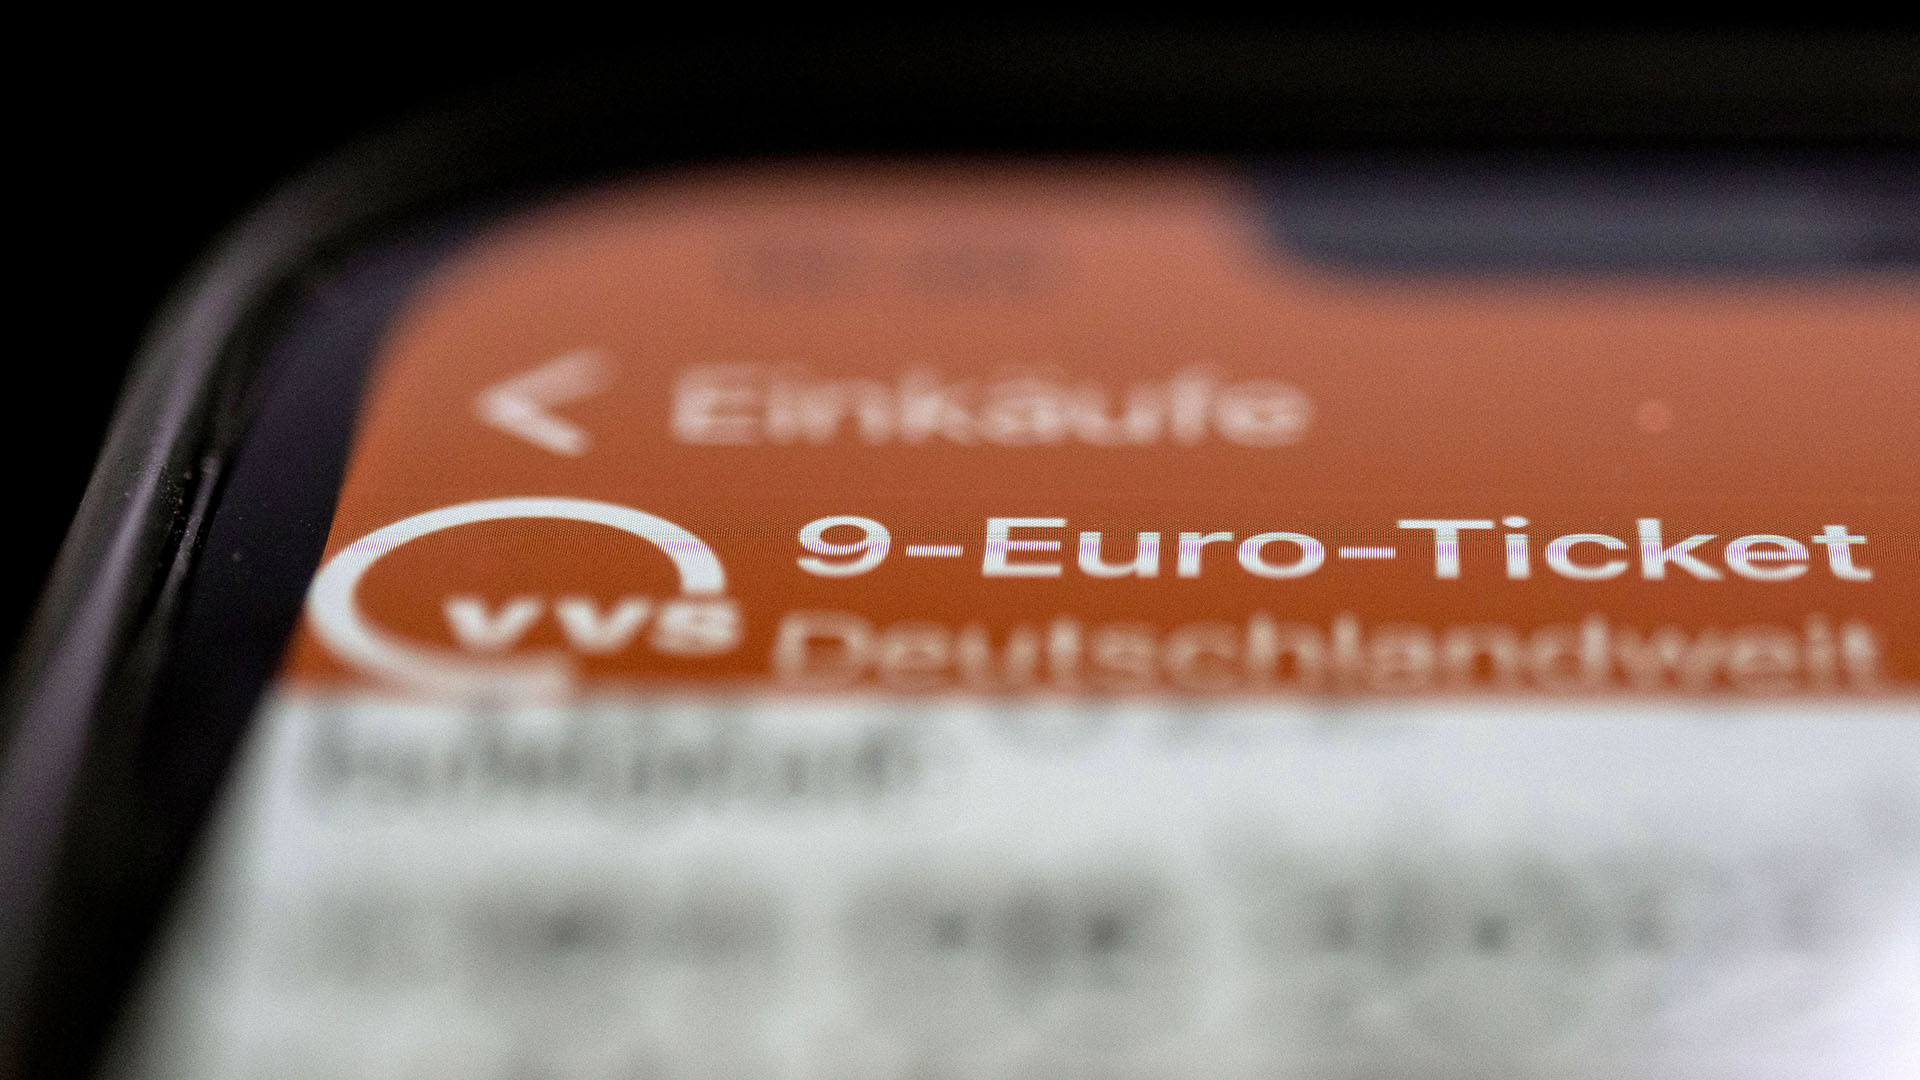 Ein 9-Euro-Ticket des Verkehrs- und Tarifverbund Stuttgart GmbH (VVS) ist auf dem Display eines Smartphones zu sehen. | picture alliance/dpa